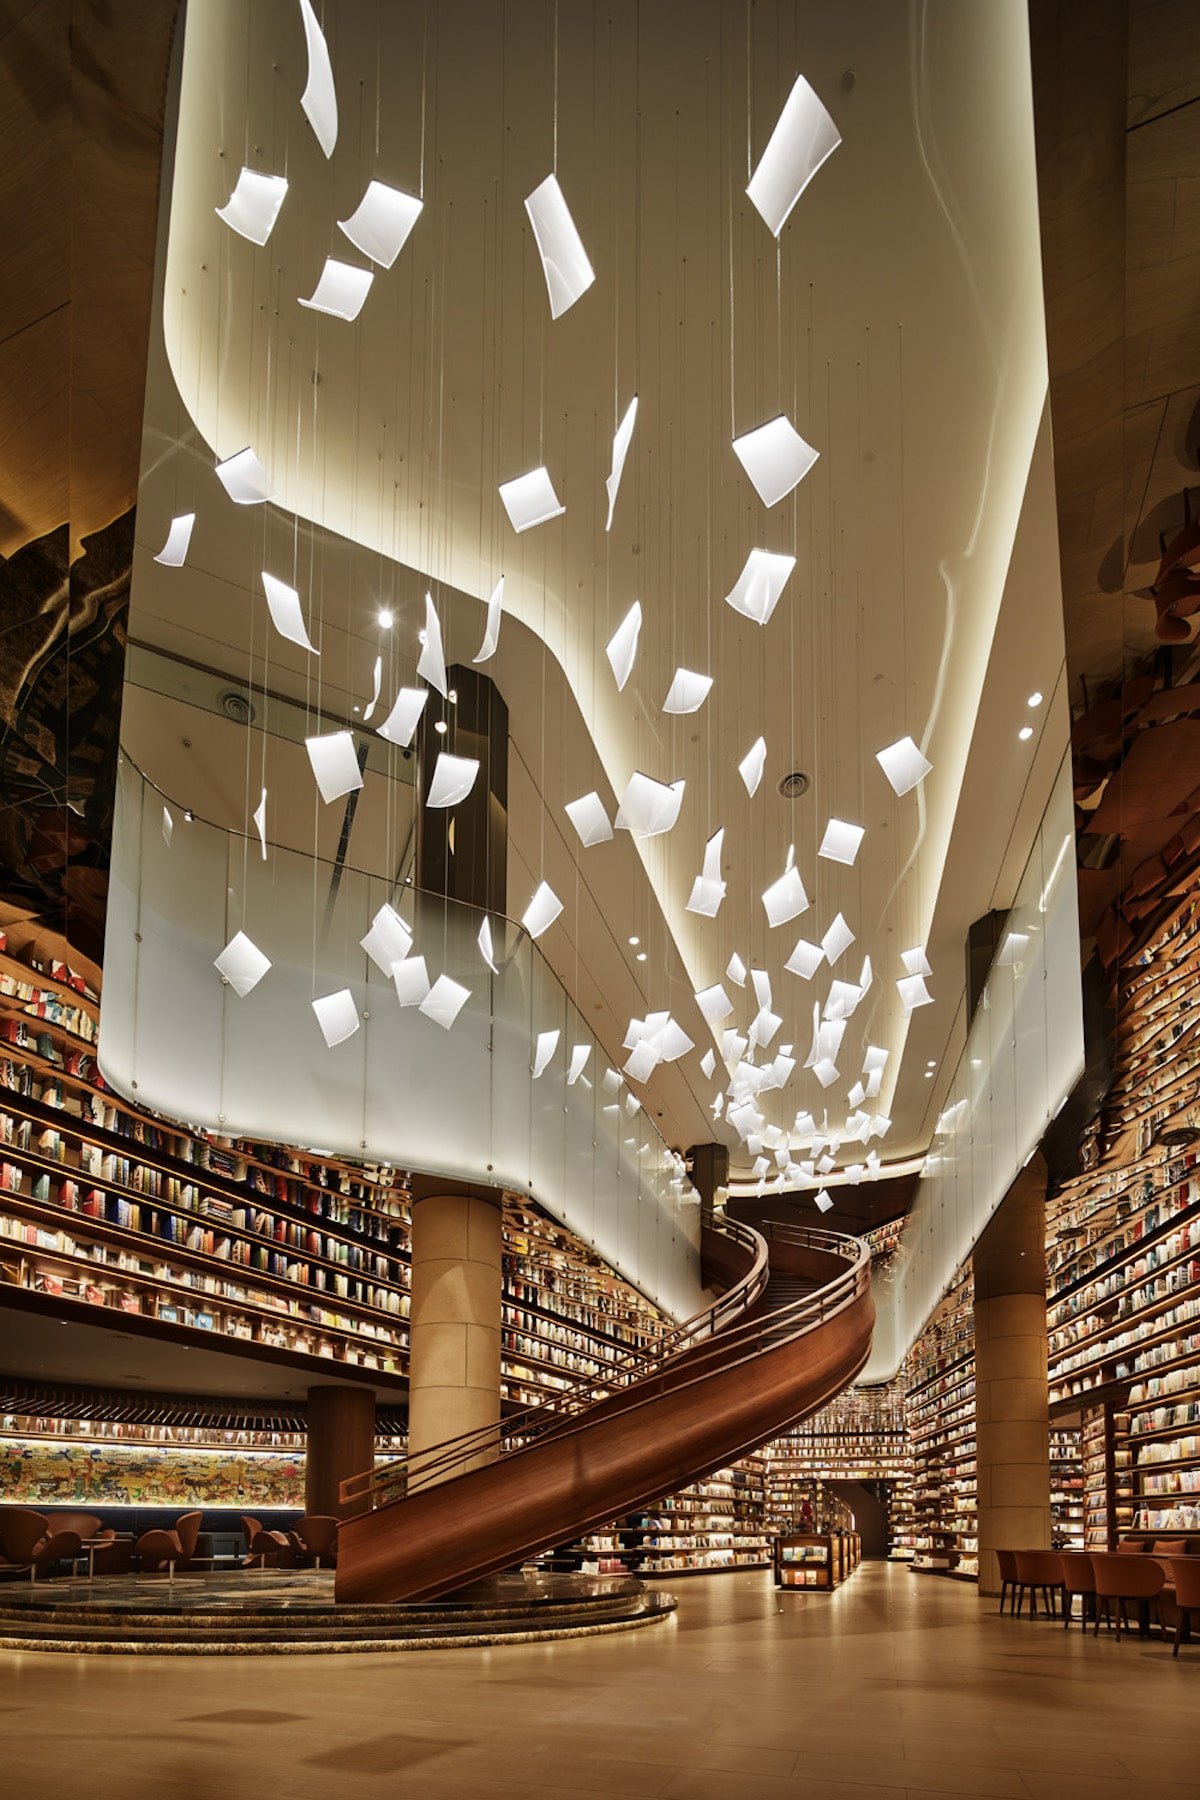 En esta biblioteca china las lámparas parecen hojas flotando en el aire2